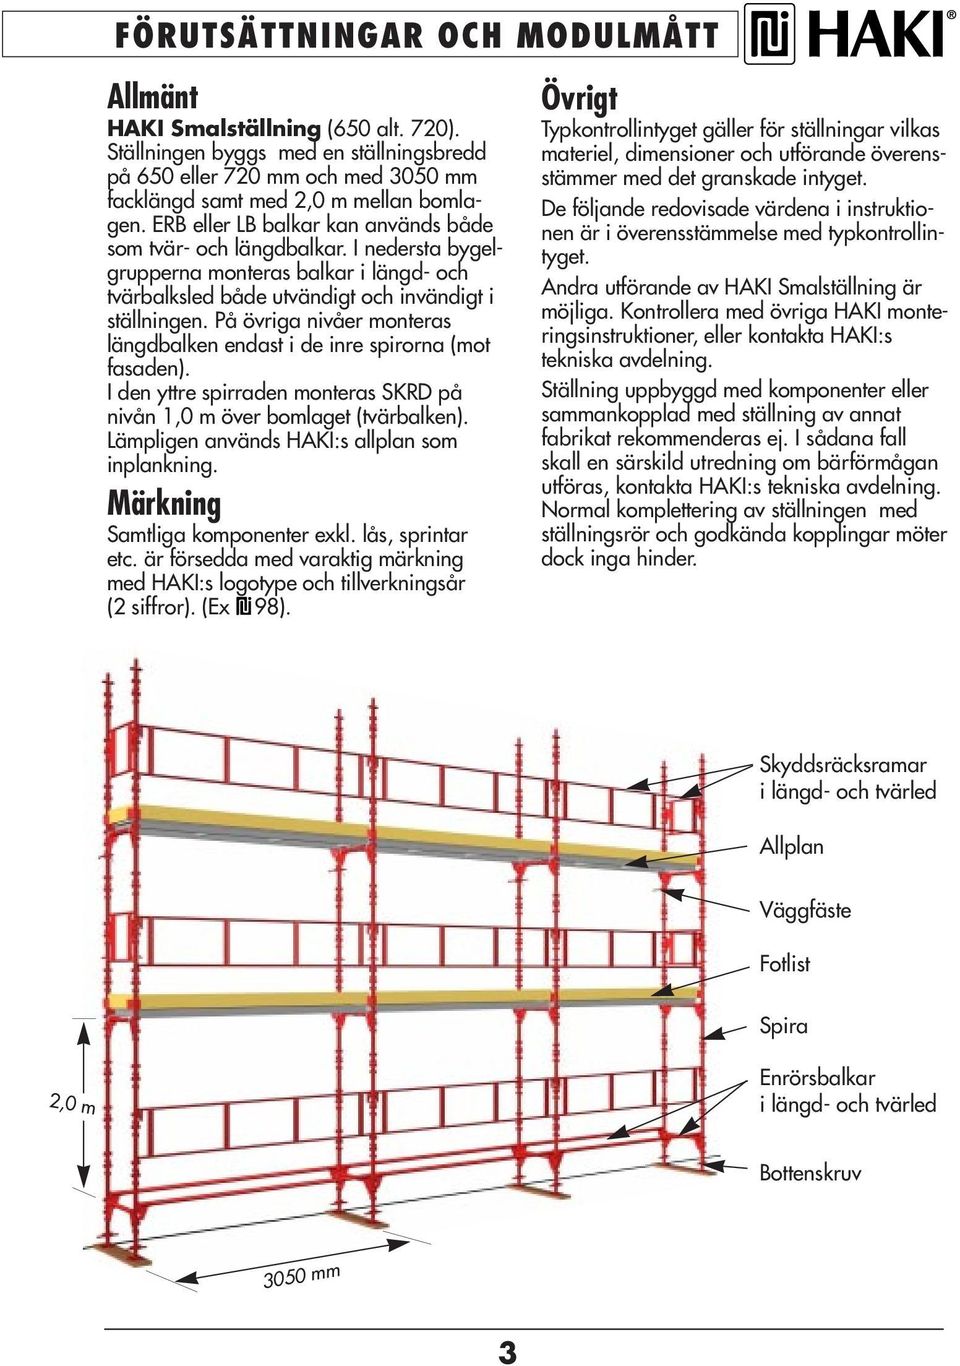 På övriga nivåer monteras längdbalken endast i de inre spirorna (mot fasaden). I den yttre spirraden monteras SKRD på nivån 1,0 m över bomlaget (tvärbalken).